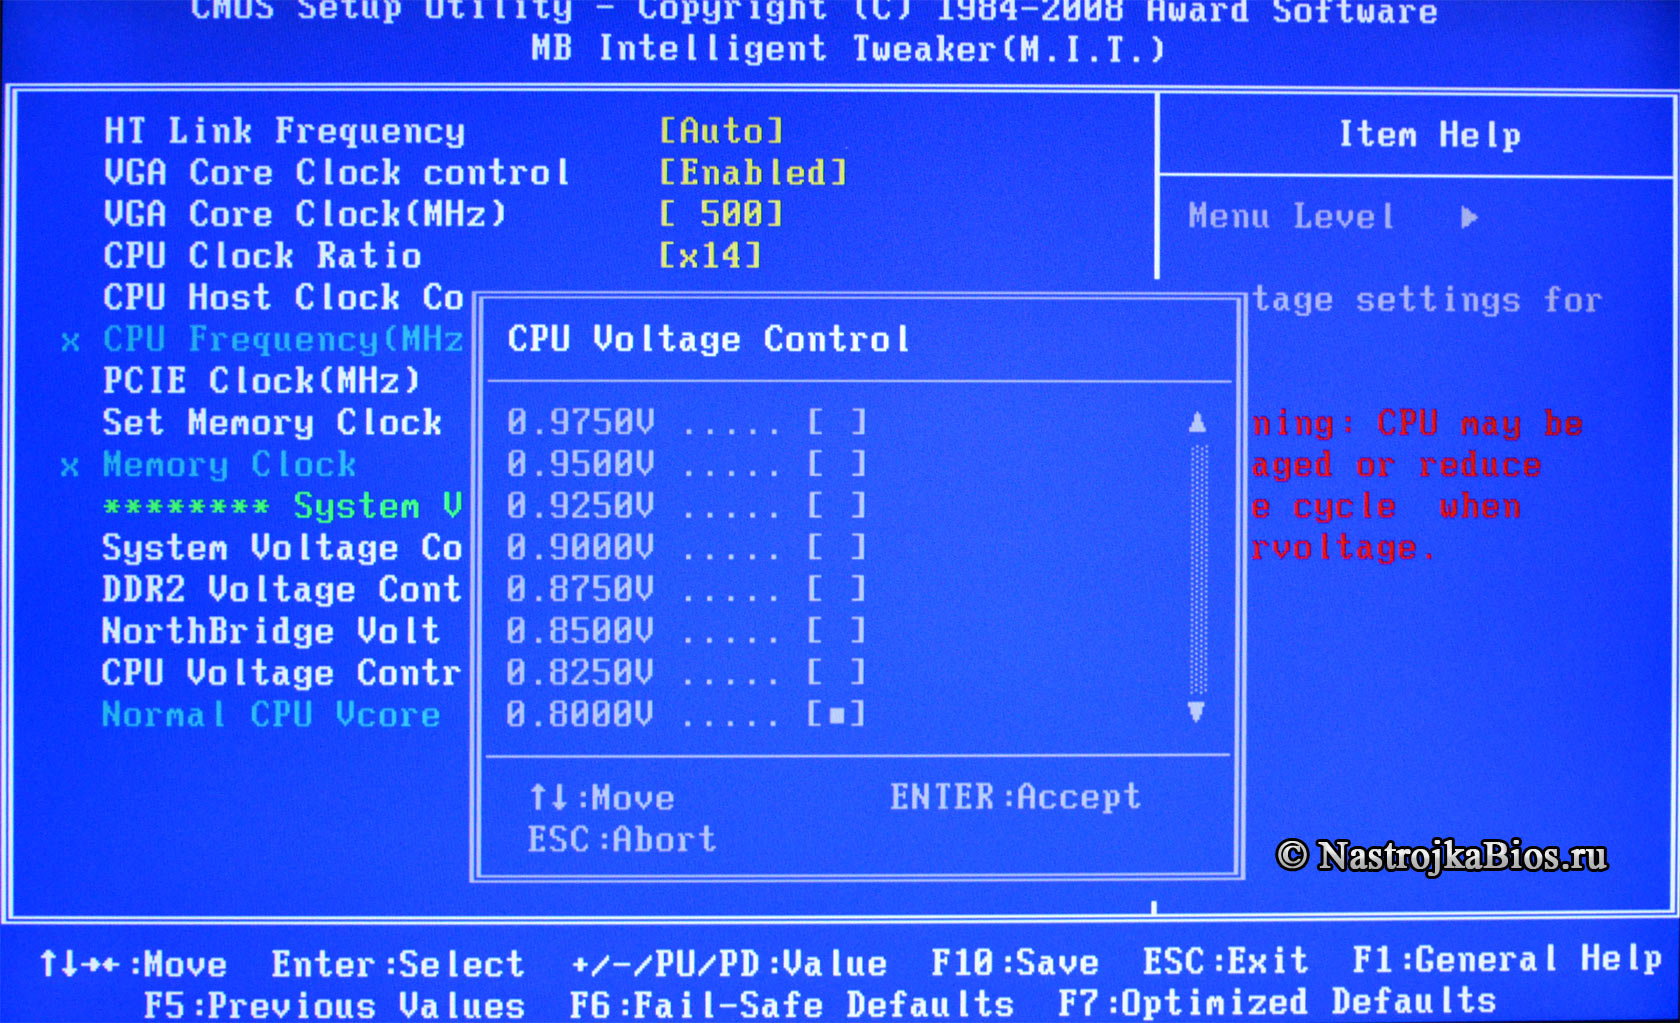 CPU VCore Voltage - CPU Voltage Control